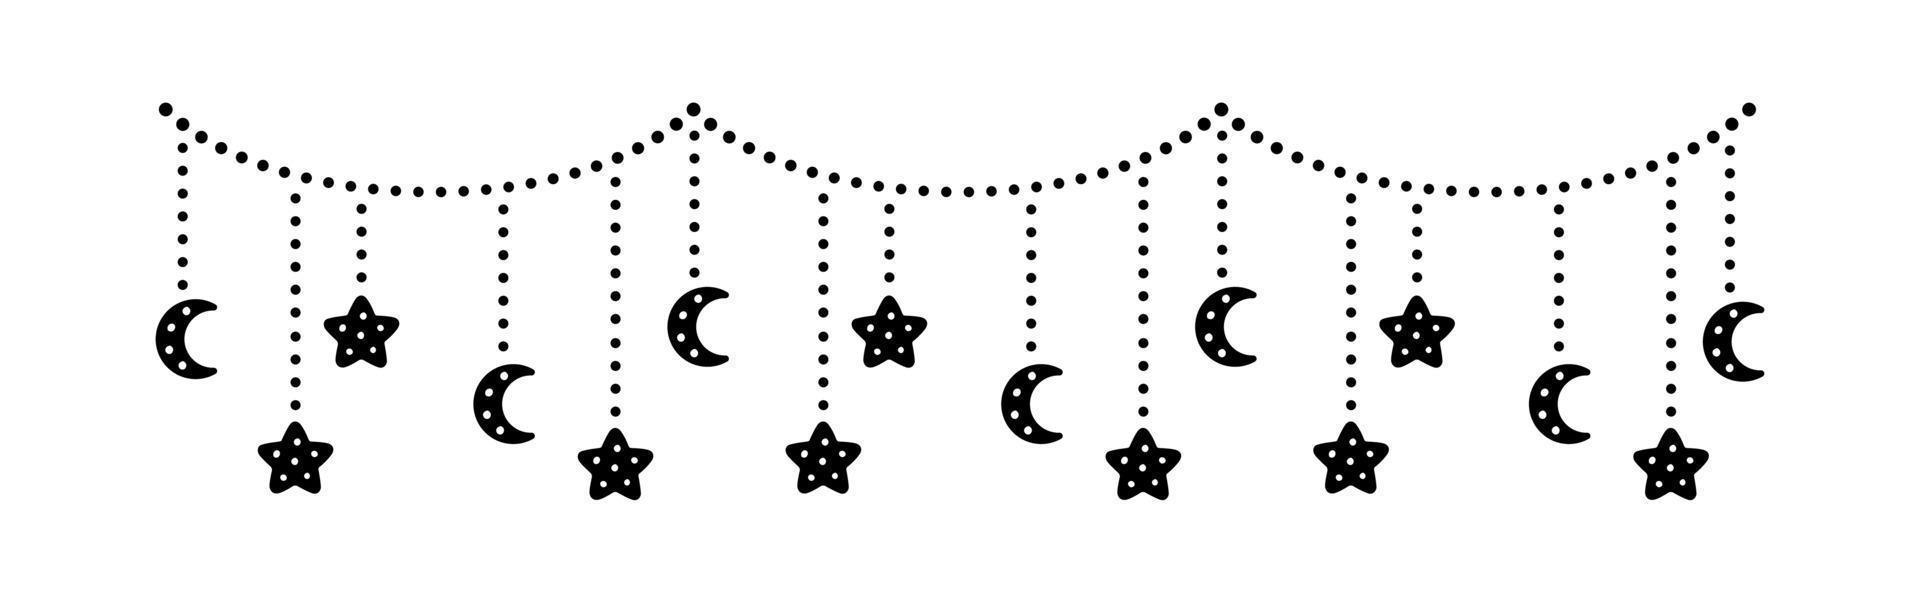 maan en sterren lichten bungelend vlaggedoek slinger silhouet vector